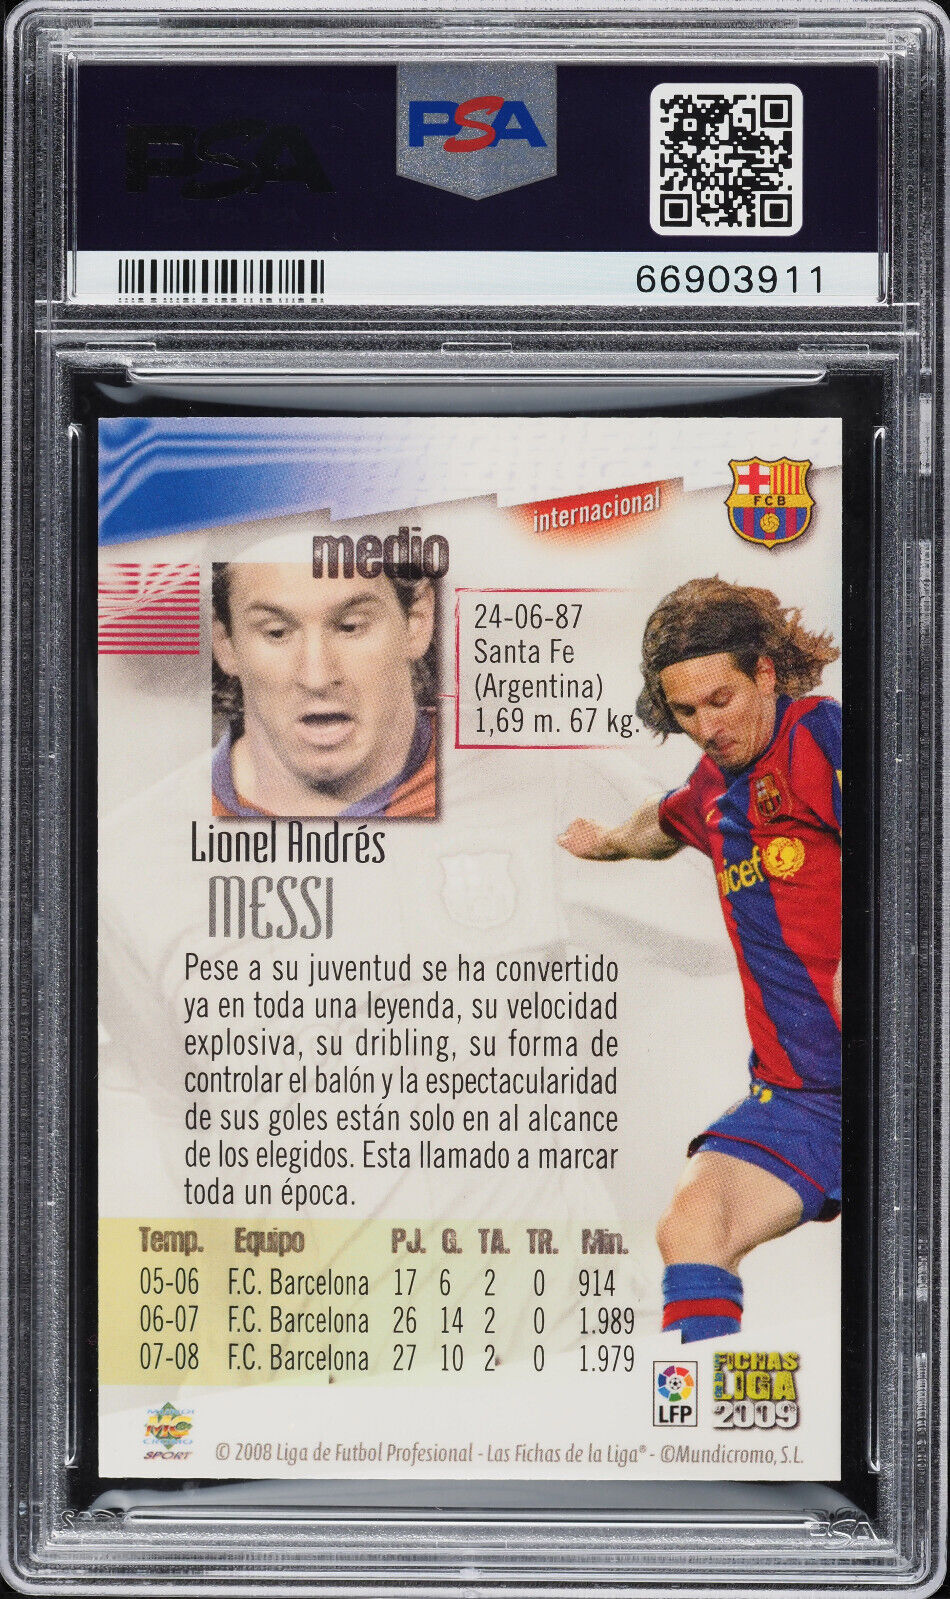 2008 Mundi Cromo Las Fichas De La Liga Lionel Messi 74 Psa 8 Nm Mt 1